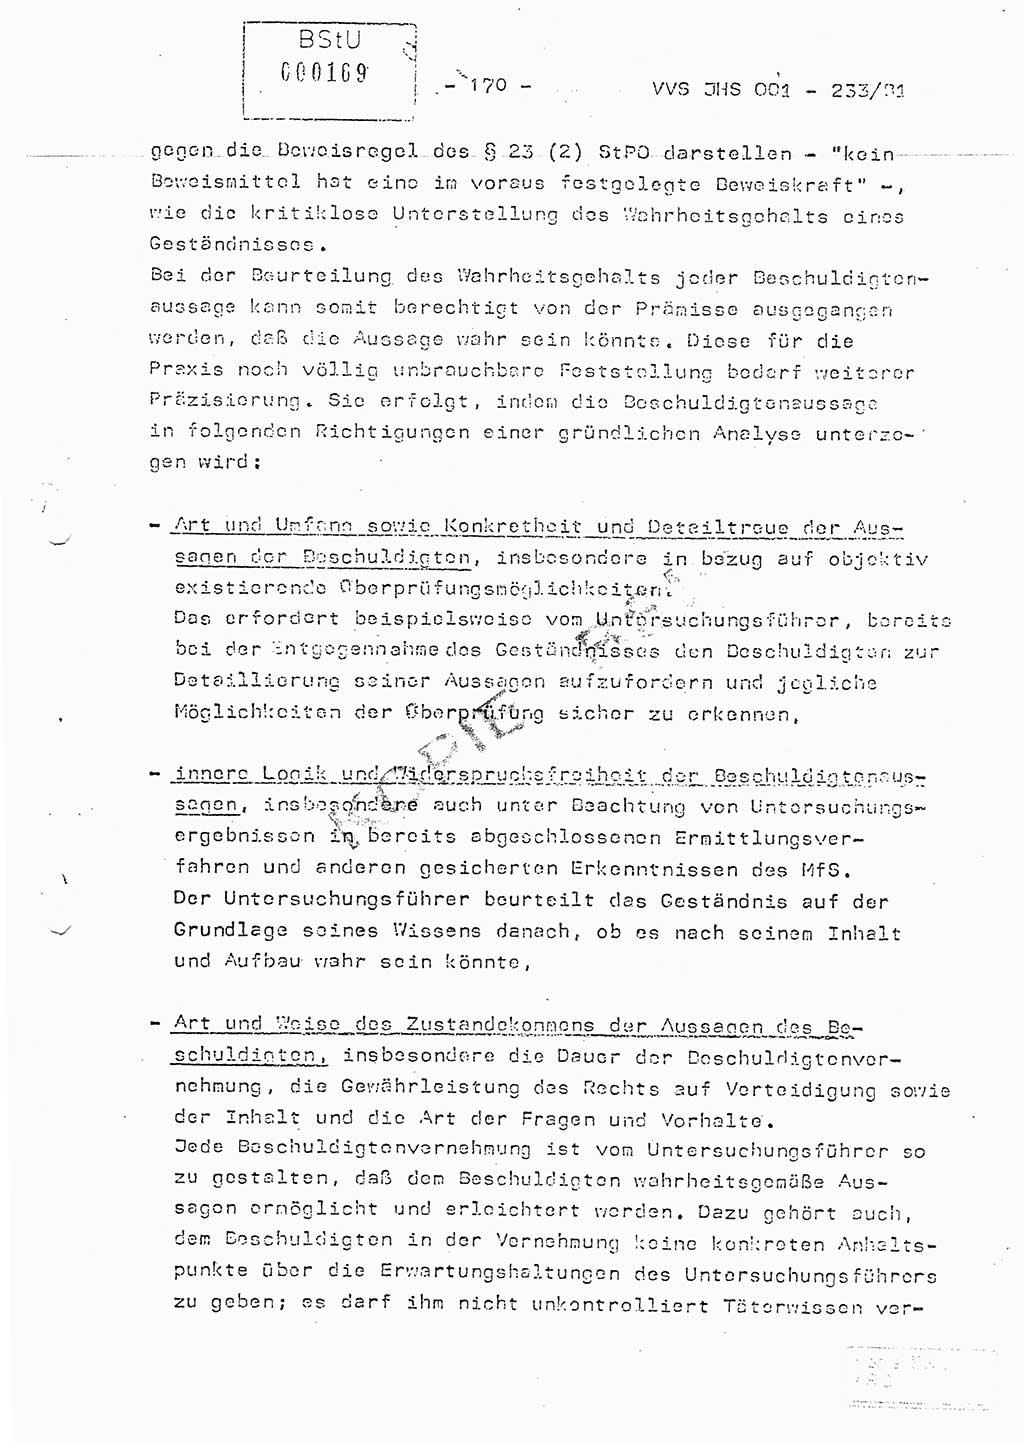 Dissertation Oberstleutnant Horst Zank (JHS), Oberstleutnant Dr. Karl-Heinz Knoblauch (JHS), Oberstleutnant Gustav-Adolf Kowalewski (HA Ⅸ), Oberstleutnant Wolfgang Plötner (HA Ⅸ), Ministerium für Staatssicherheit (MfS) [Deutsche Demokratische Republik (DDR)], Juristische Hochschule (JHS), Vertrauliche Verschlußsache (VVS) o001-233/81, Potsdam 1981, Blatt 170 (Diss. MfS DDR JHS VVS o001-233/81 1981, Bl. 170)